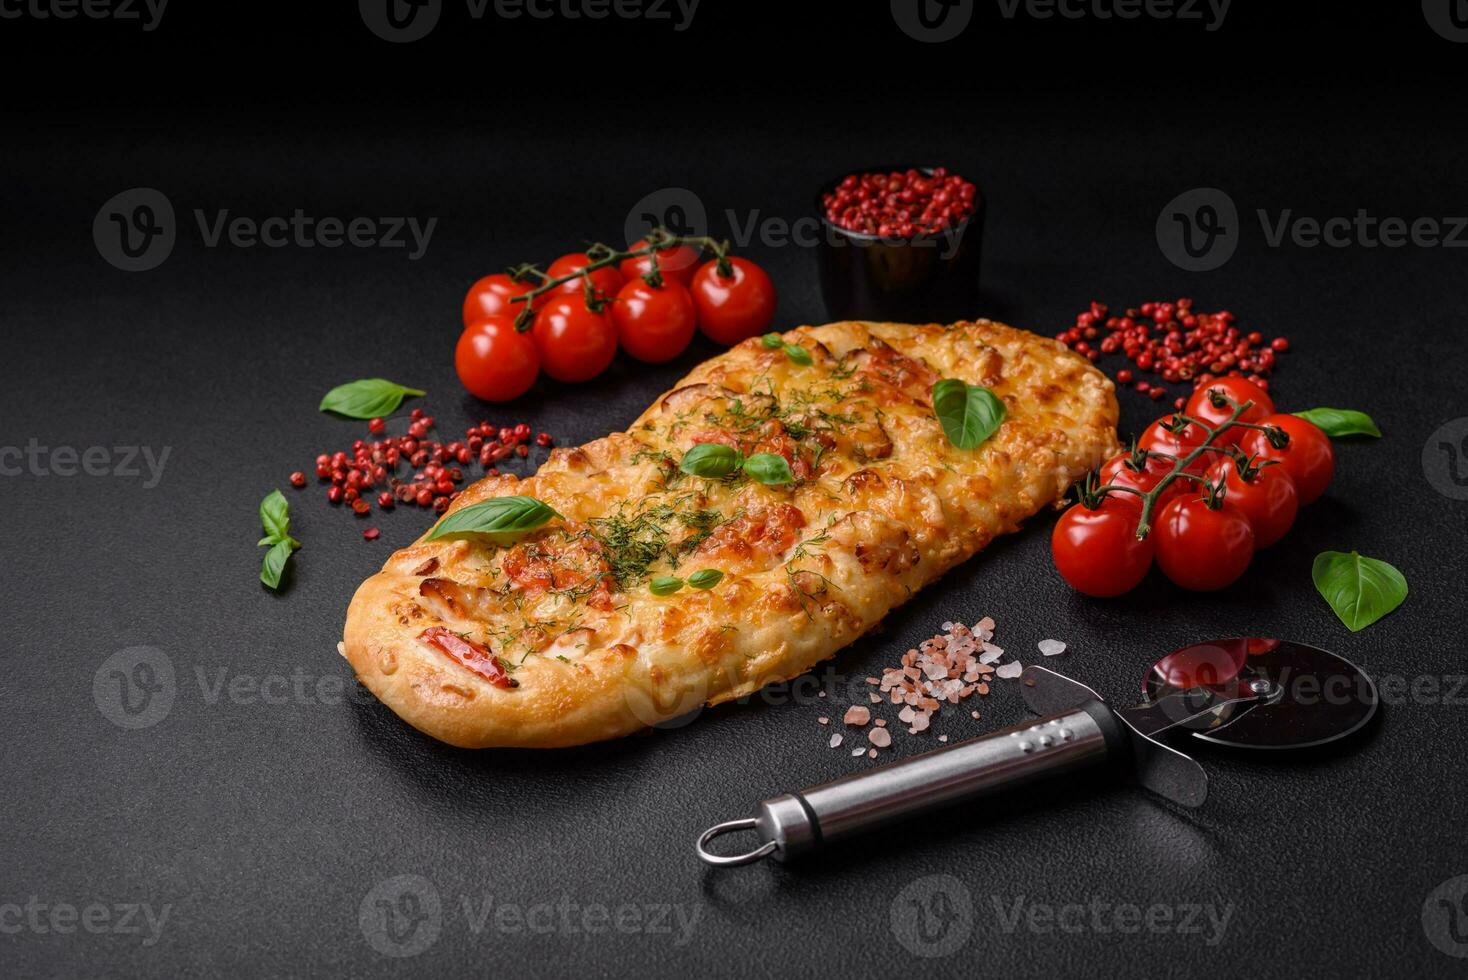 heerlijk oven vers flatbread pizza met kaas, tomaten, worst, zout en specerijen foto